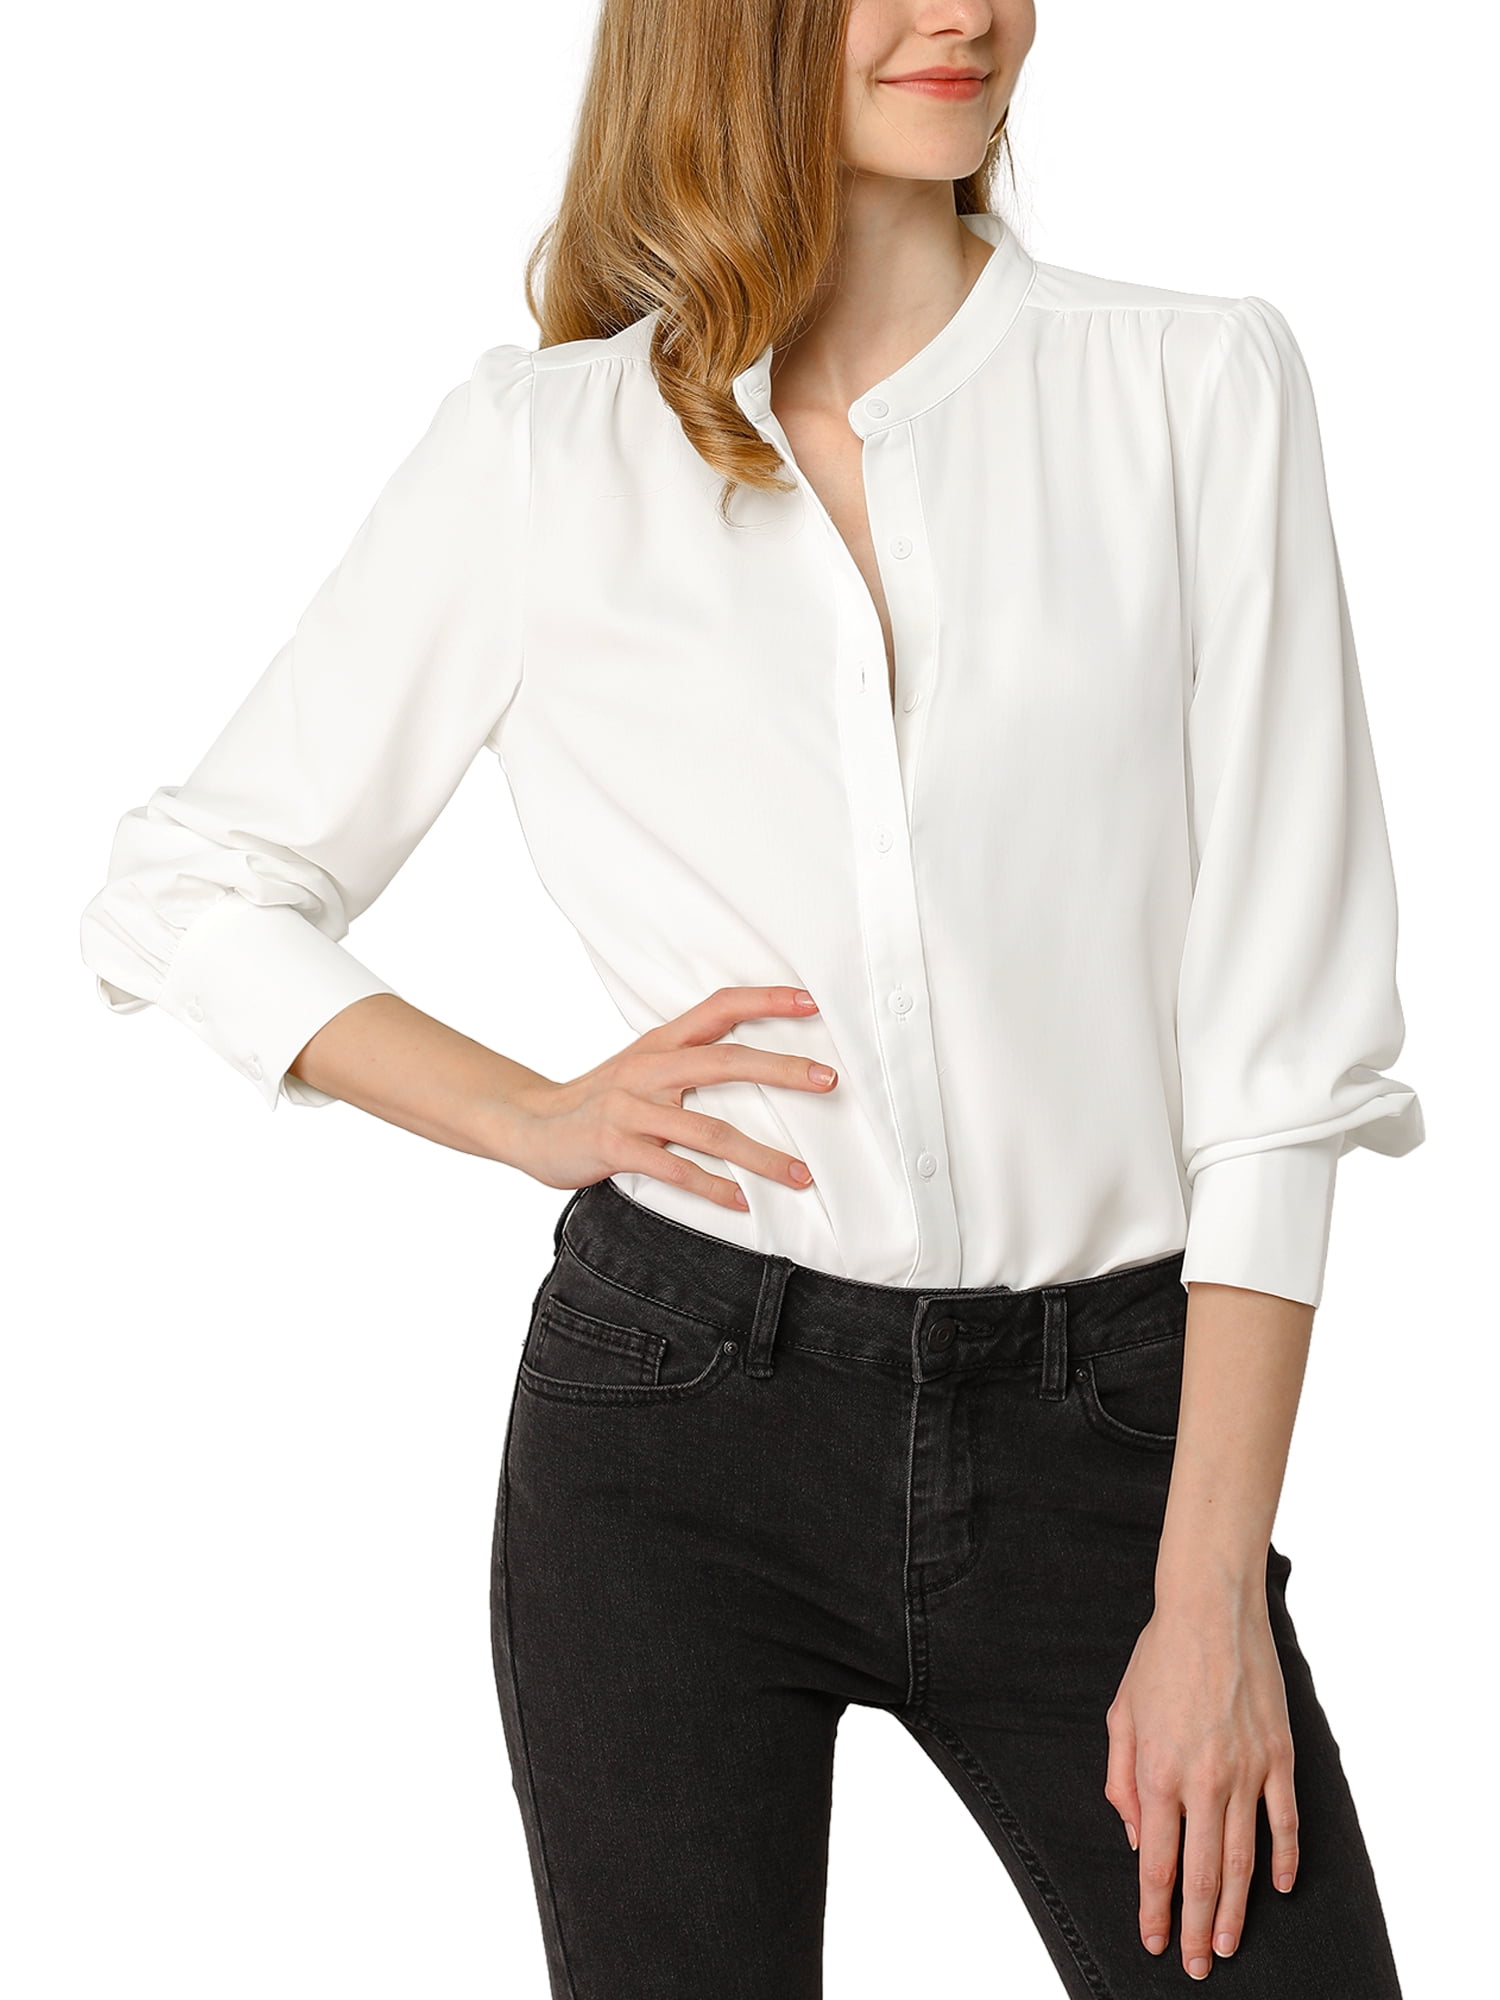 Allegra K Women's Stand Collar Button Down Long Sleeve Shirts - Walmart.com